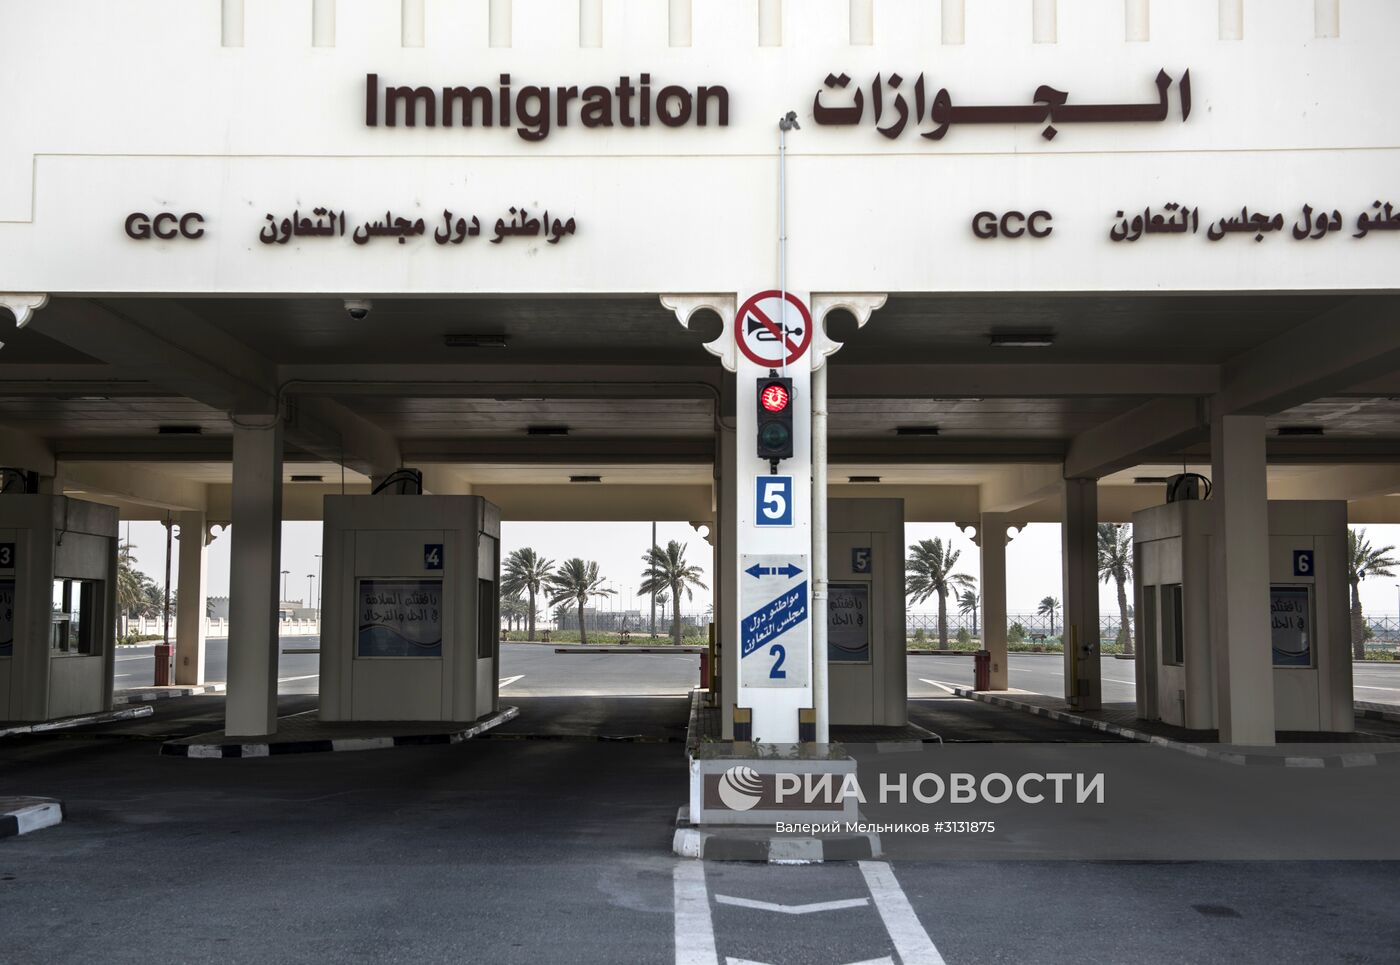 Ситуация на границе Катара с Саудовской Аравией